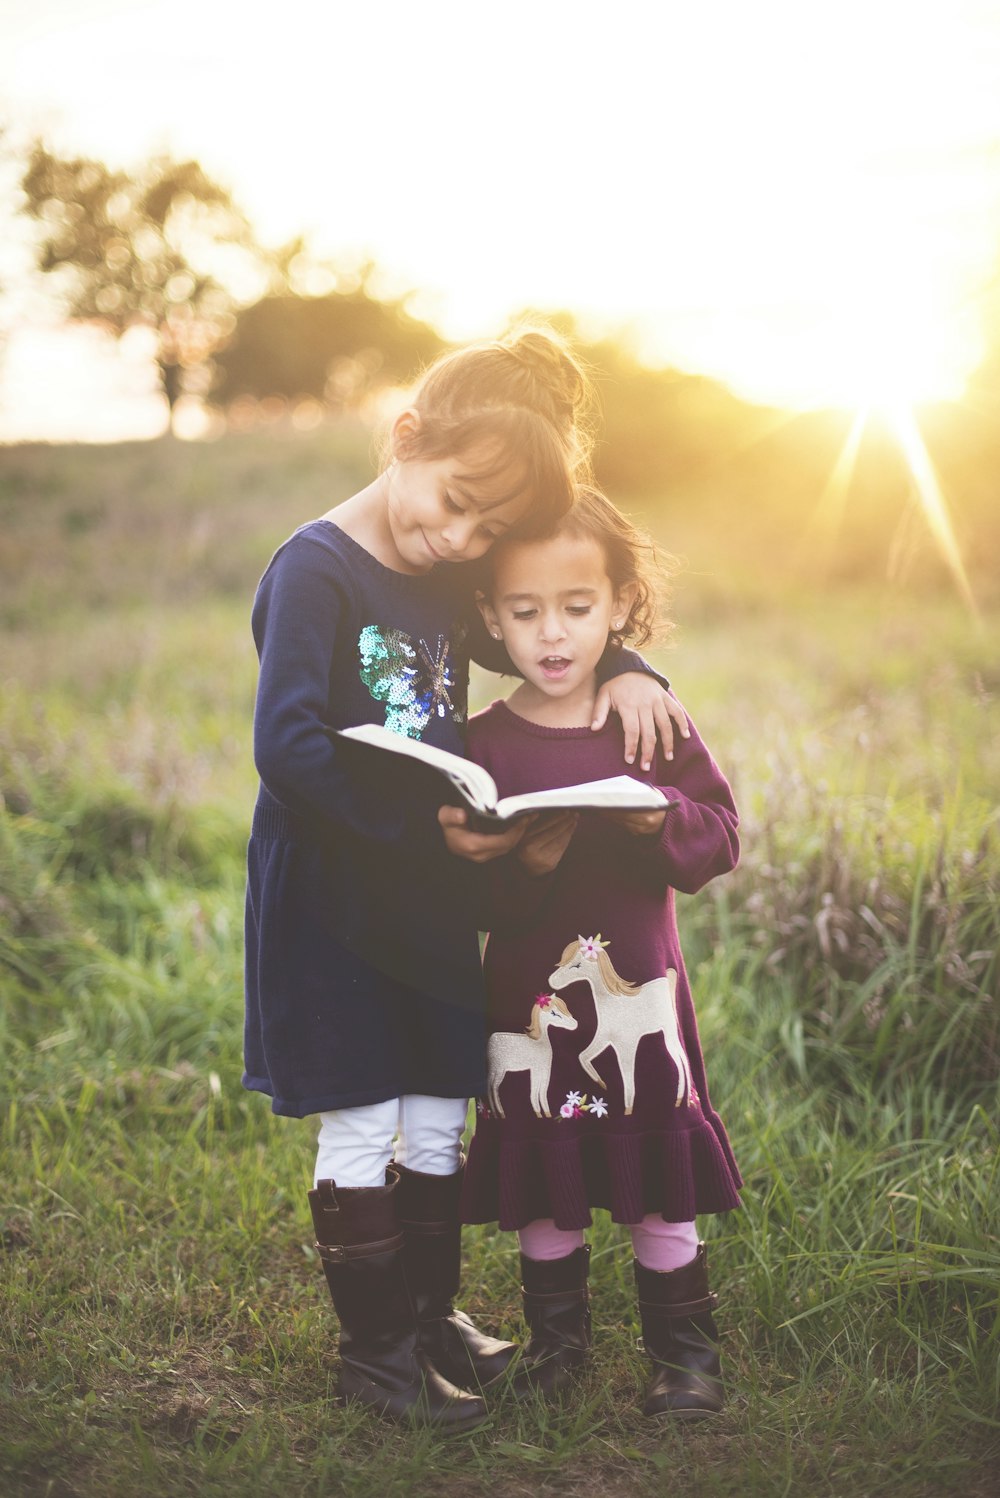 la mano izquierda de la niña se envuelve alrededor del niño mientras lee el libro durante la hora dorada